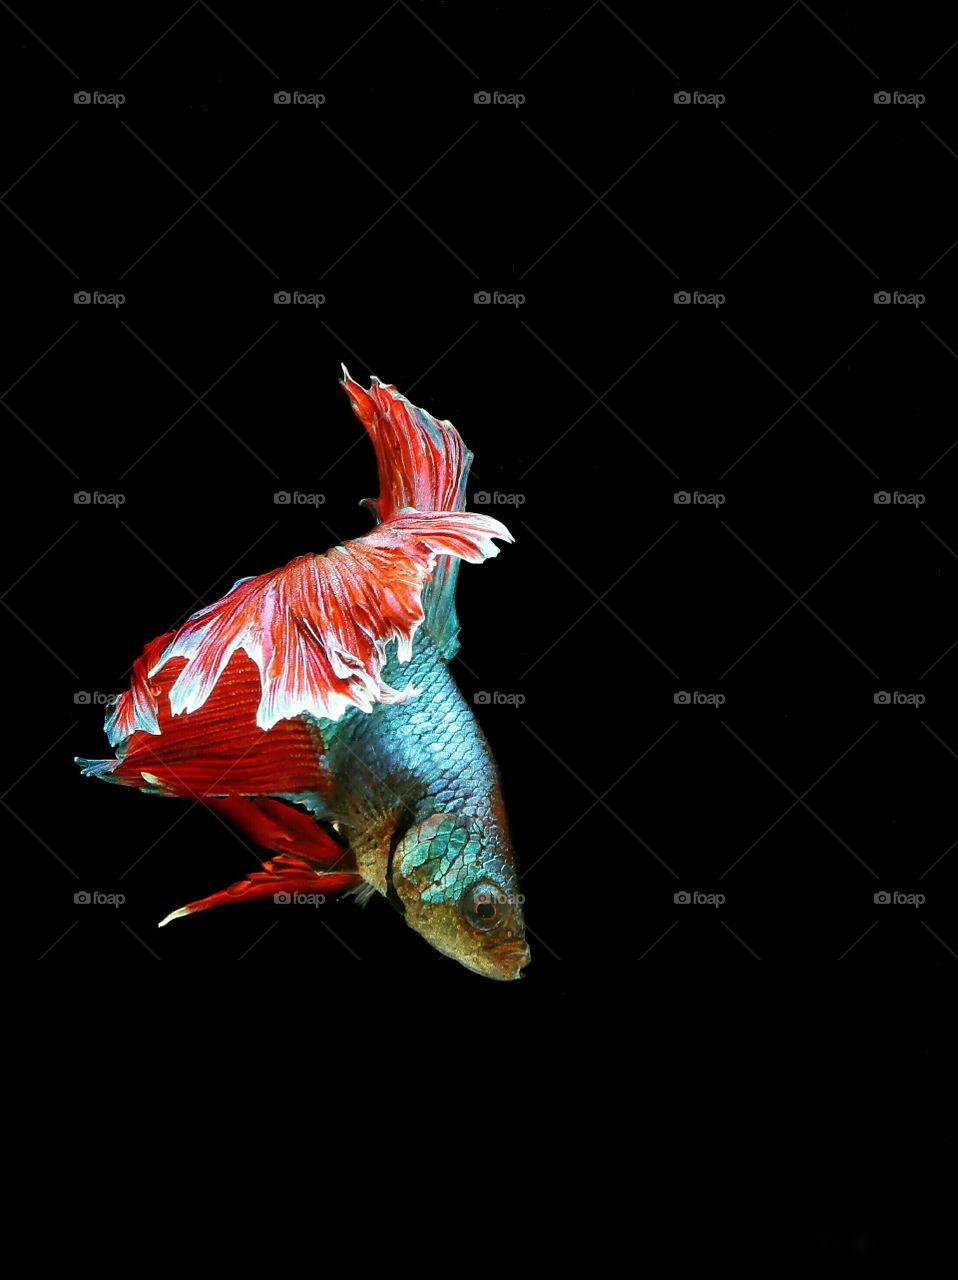 Beauty Pose..
Betta Fish